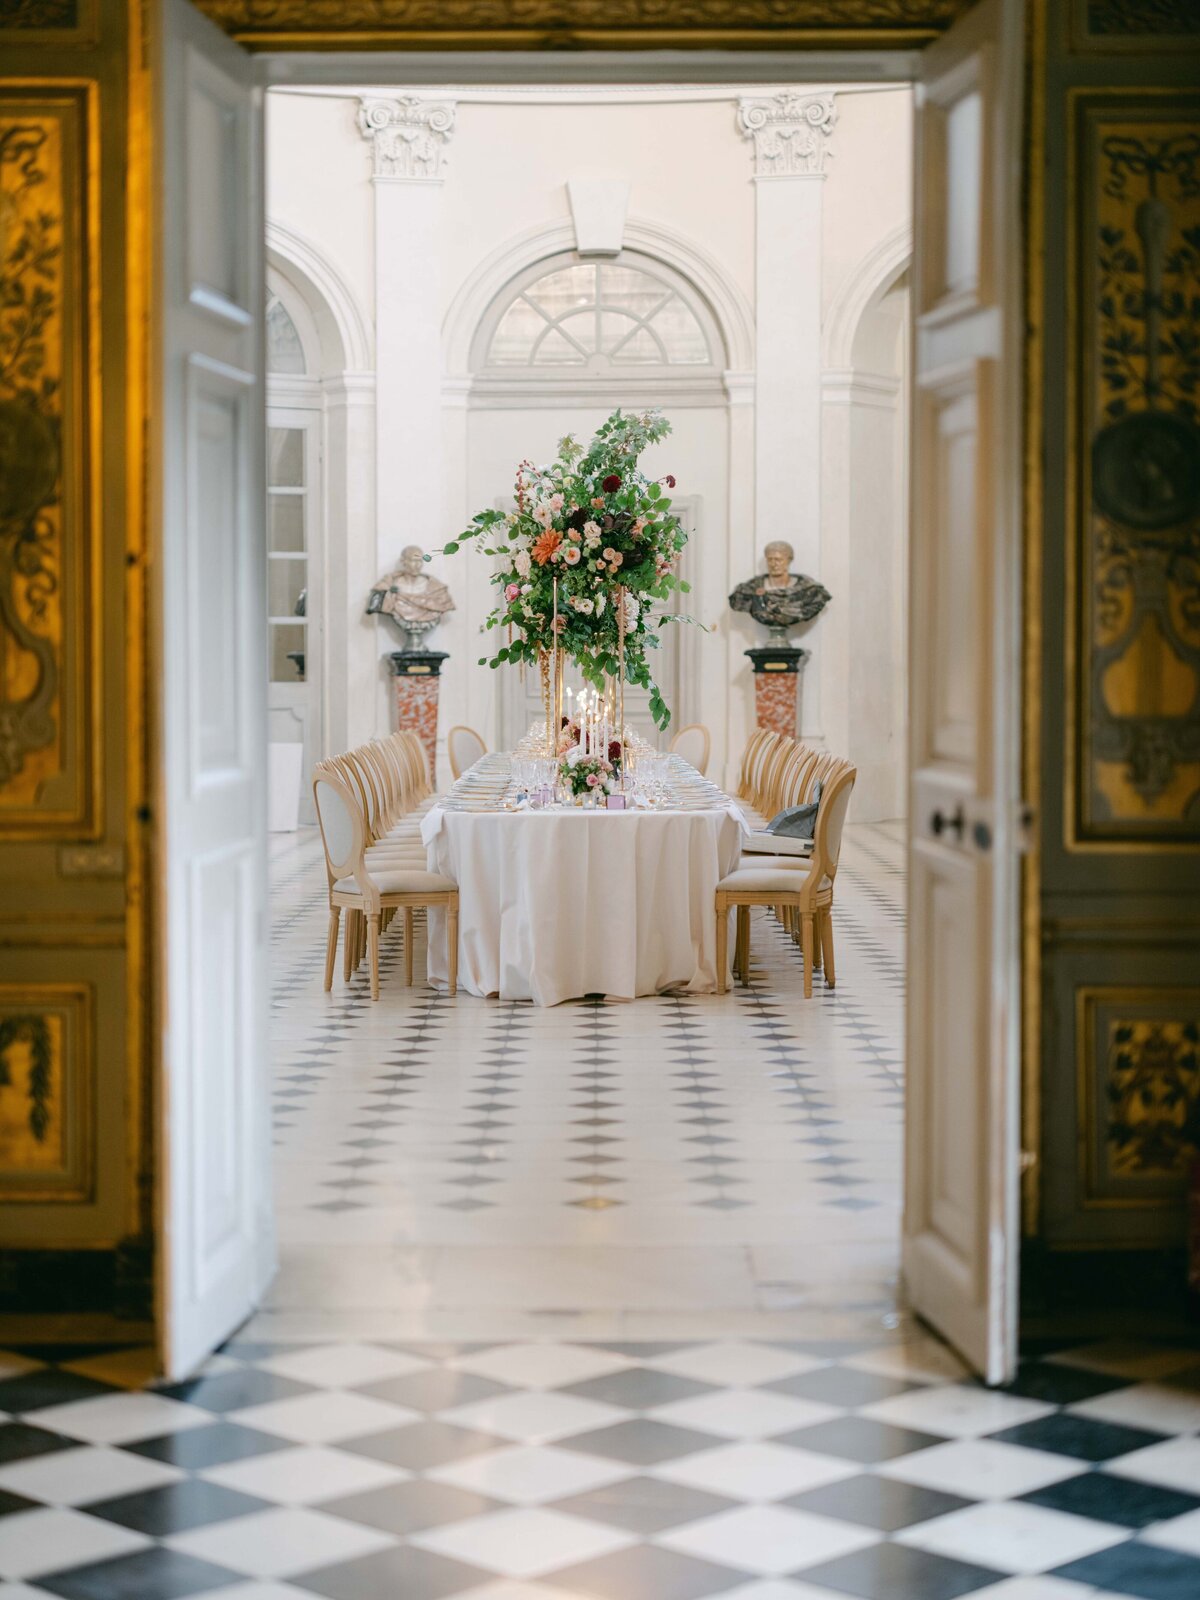 Chateau-Vaux-le-vicomte-wedding-florist-FLORAISON42